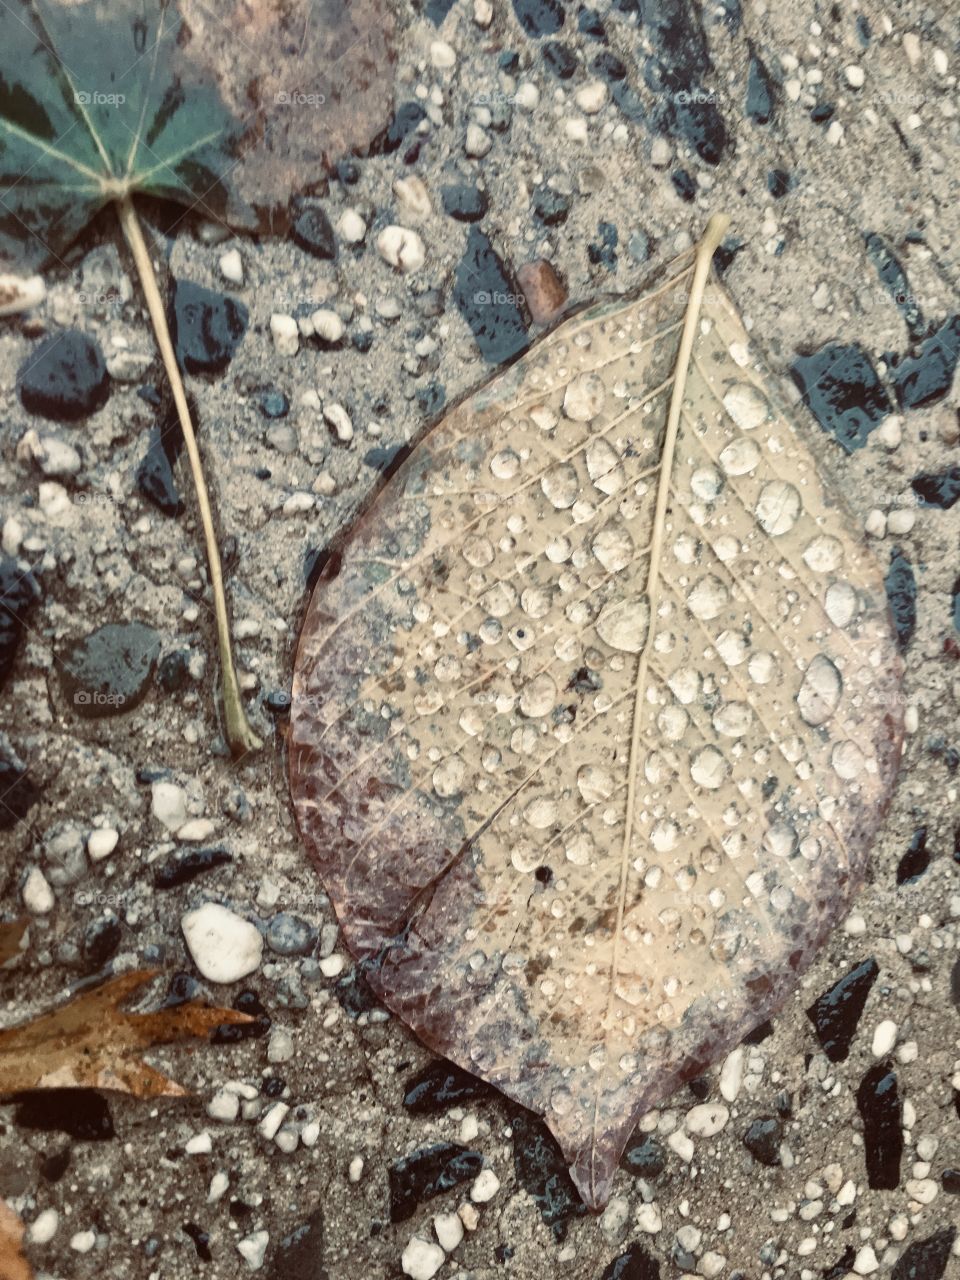 Morning Dew on a Fallen Lead